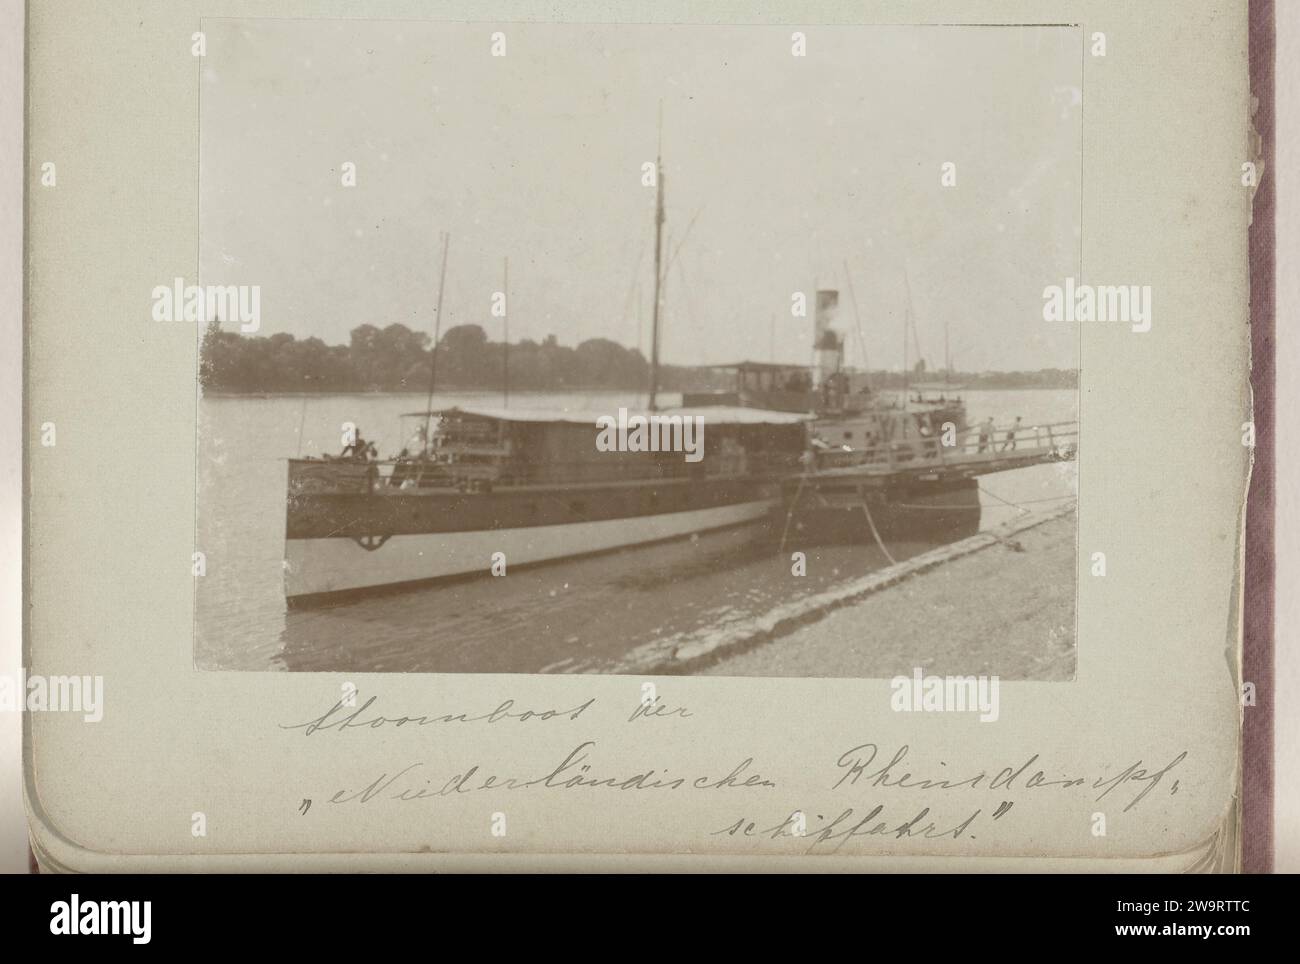 Piroscafo sul Reno sulla banchina, c. 1895 - c. 1905 Fotografia questa foto fa parte di un album. Nave tedesca a vapore in carta baryta, nave a motore Reno Foto Stock